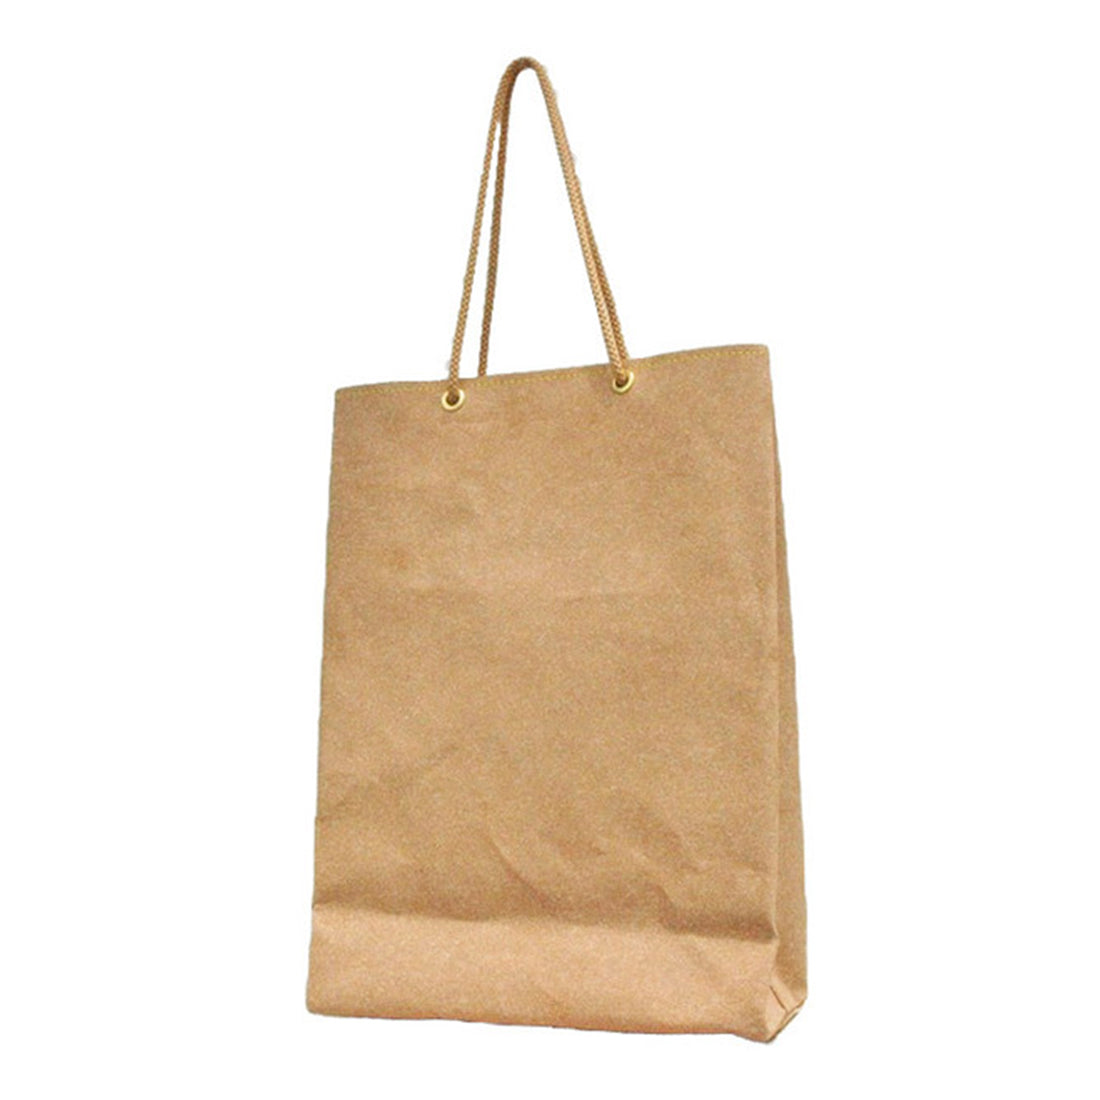 Shopping bag / ショッピングバッグ Mサイズ